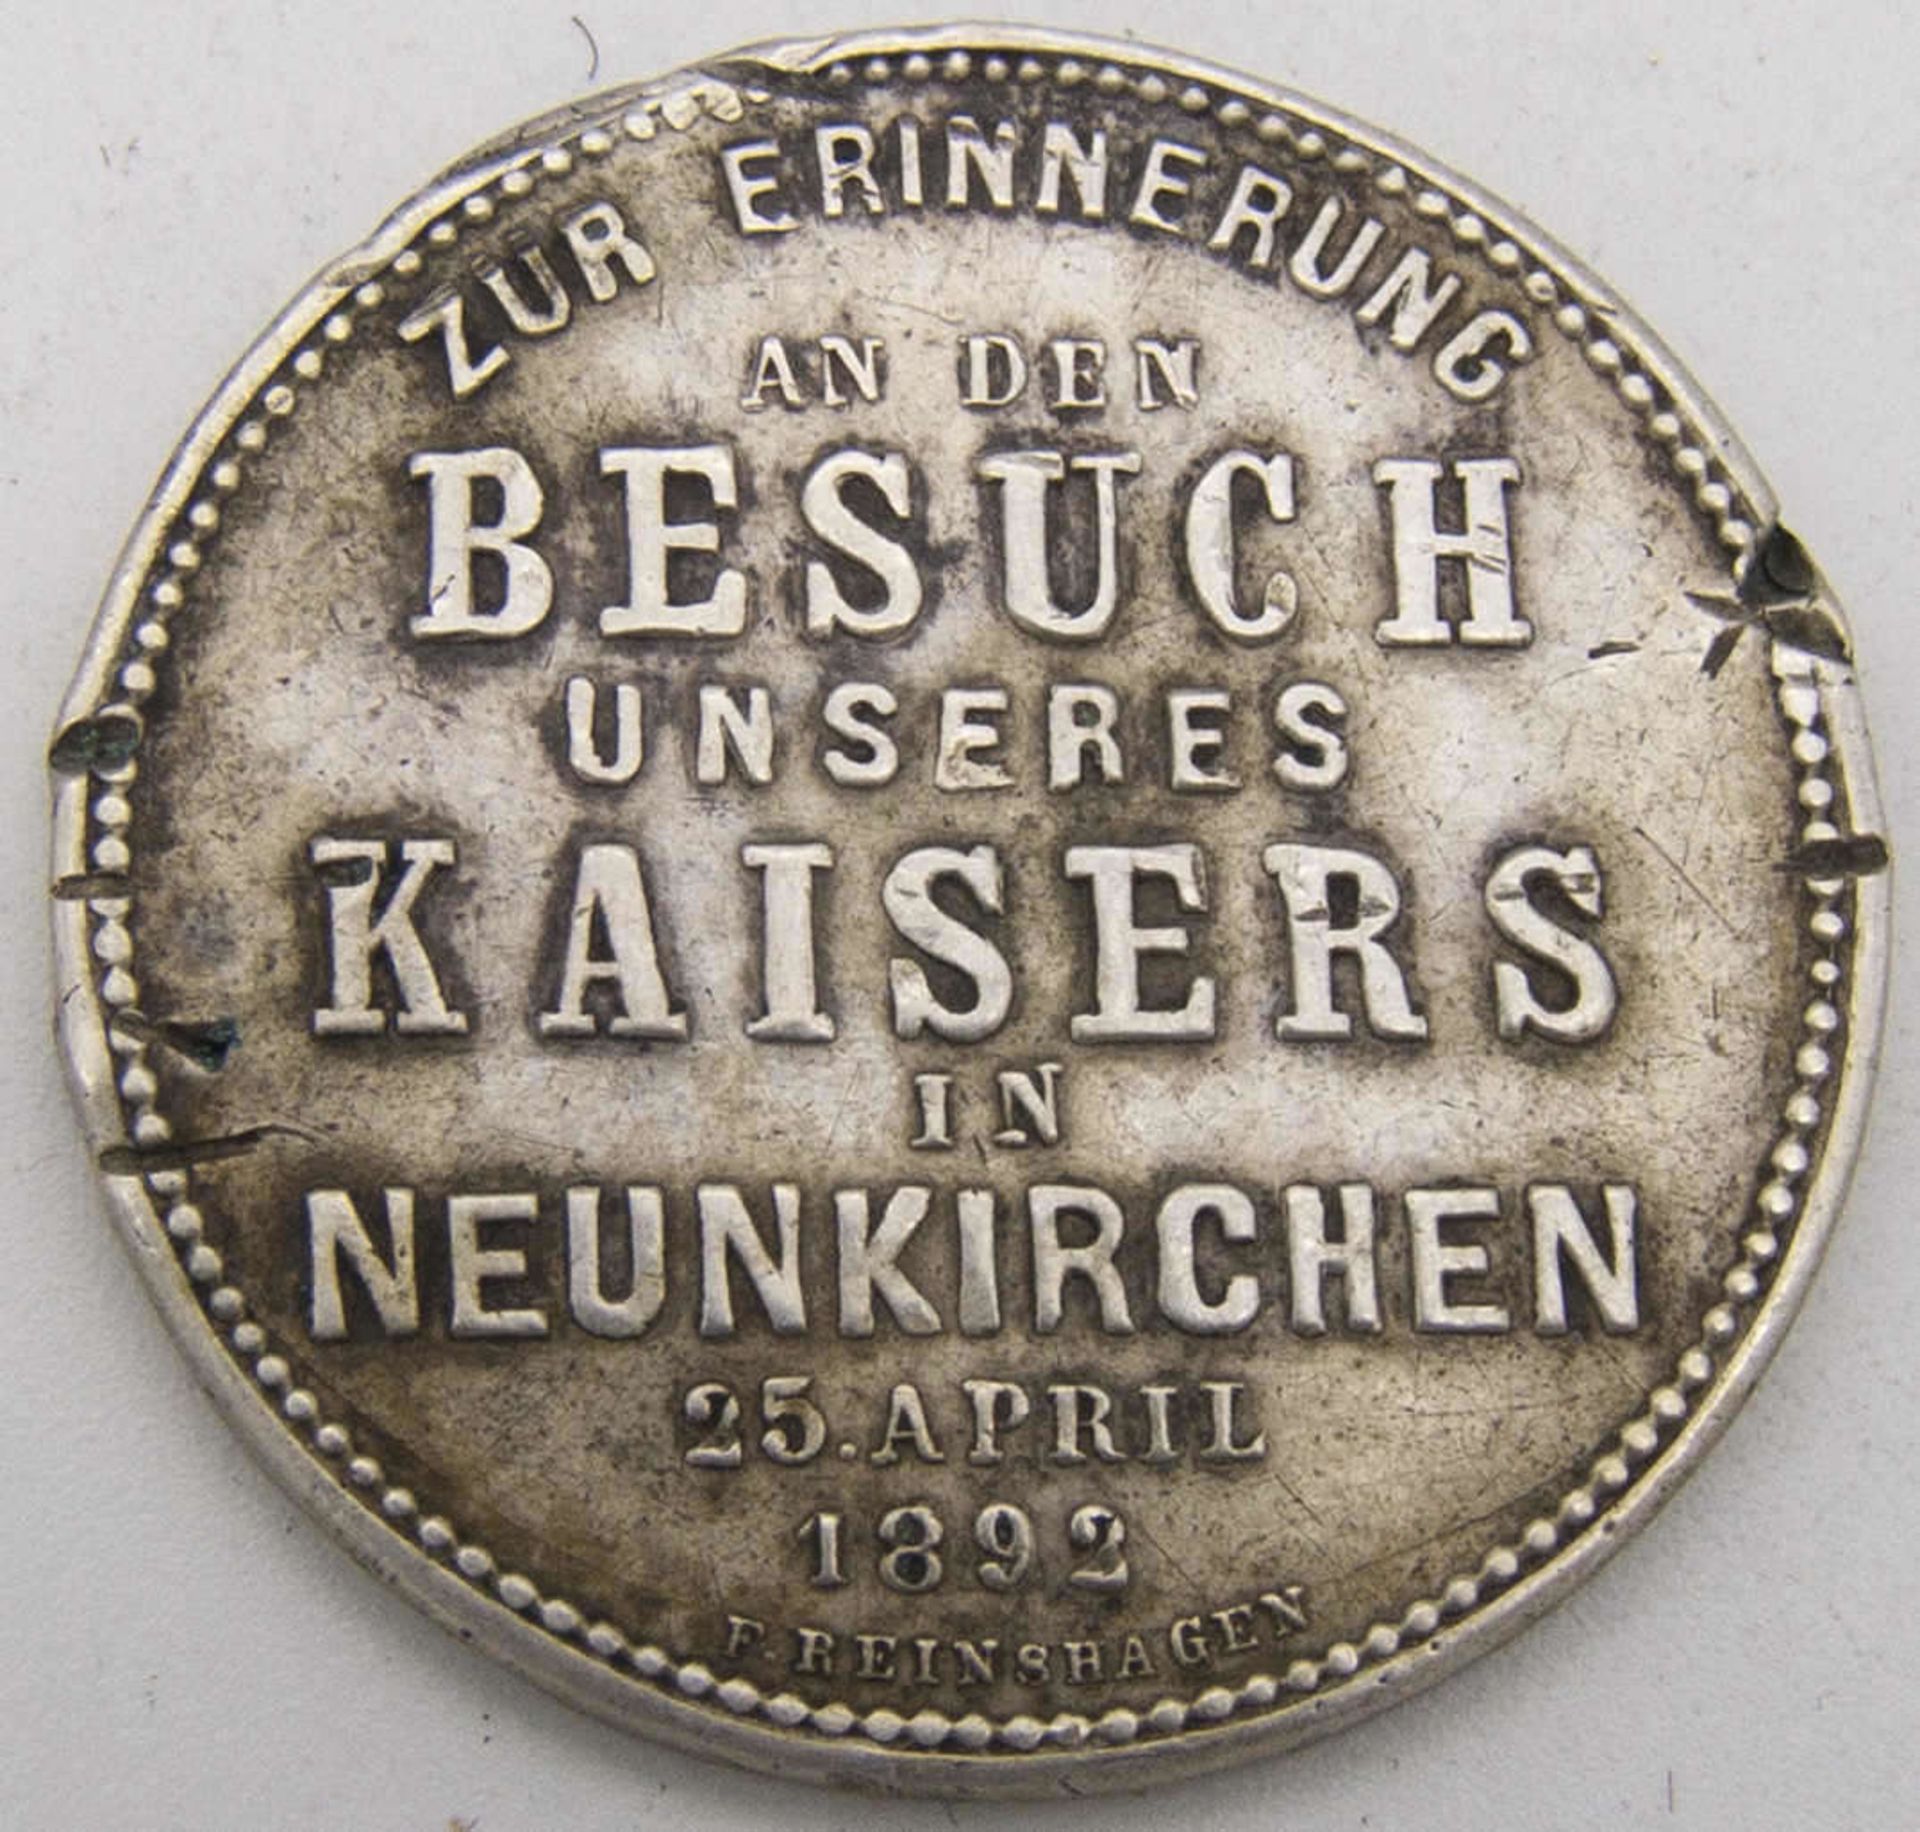 Erinnerungs - Medaille "Zur Erinnerung an den Besuch unseres Kaisers in Neunkirchen 25. April 1893". - Bild 2 aus 2